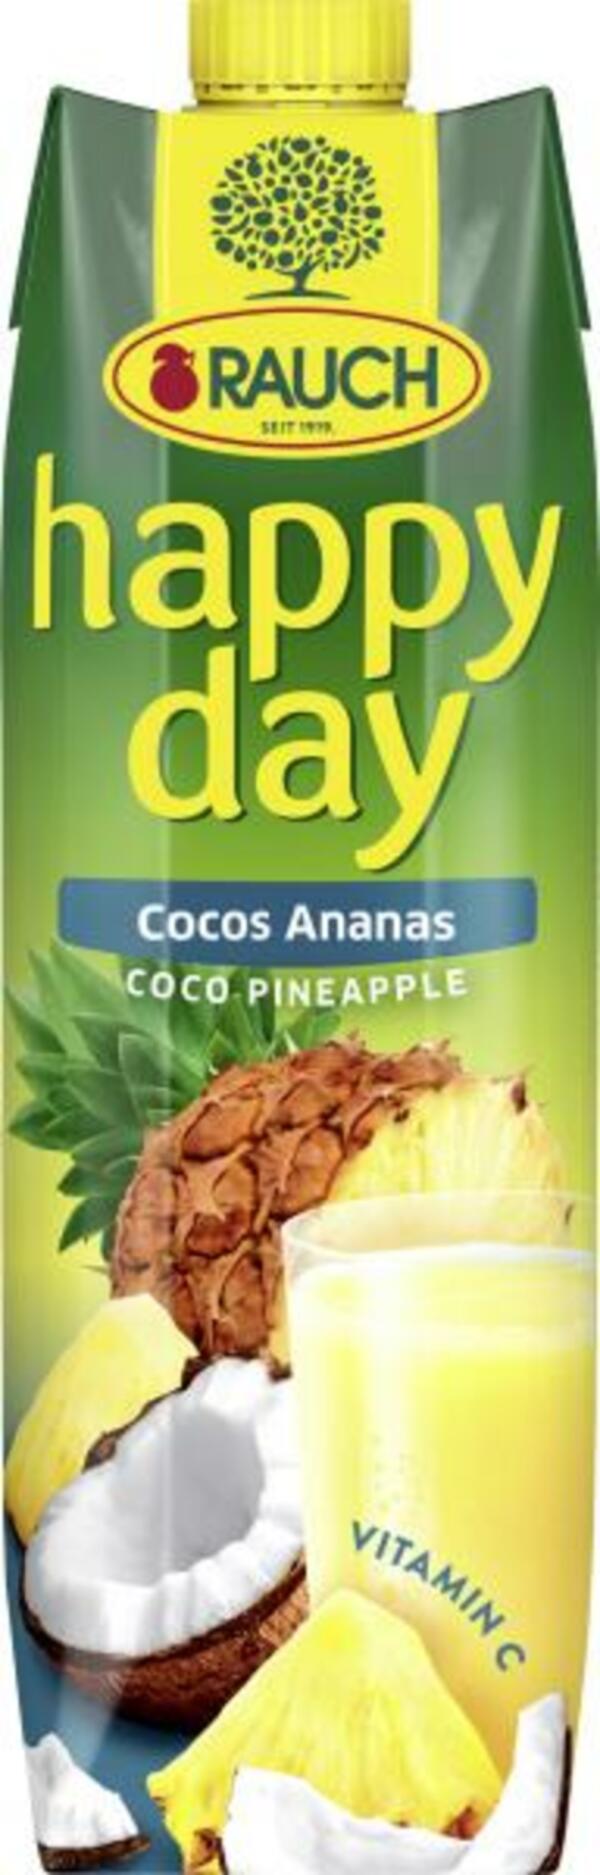 Bild 1 von Rauch Happy Day Cocos Ananas